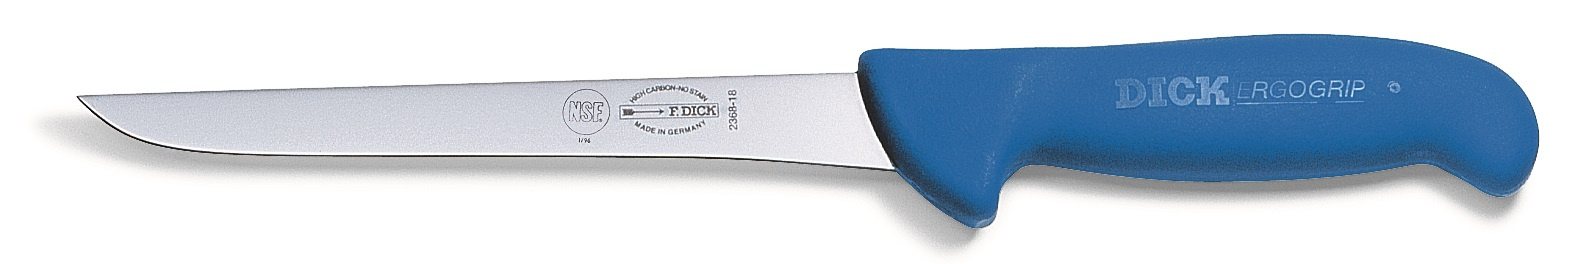 Vykosťovací nůž s úzkou čepelí v délce 21 cm